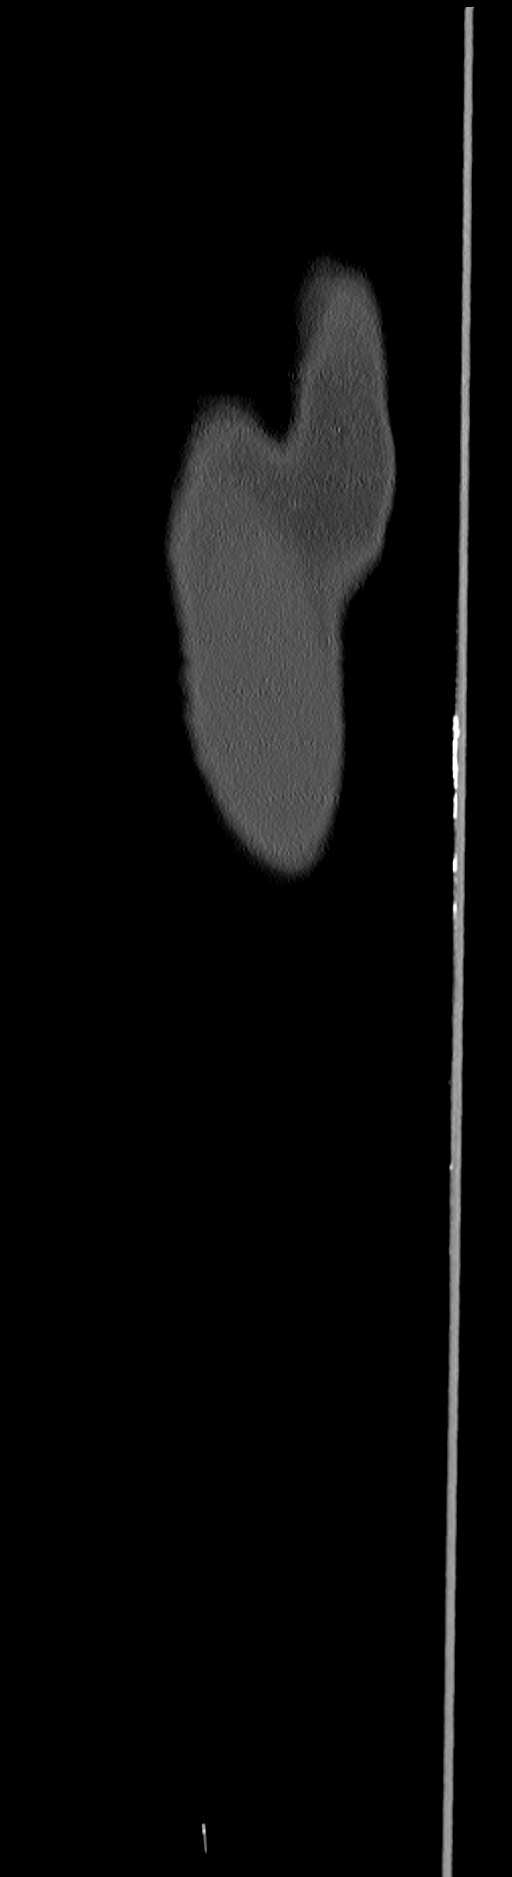 Chronic osteomyelitis (with sequestrum) (Radiopaedia 74813-85822 C 6).jpg